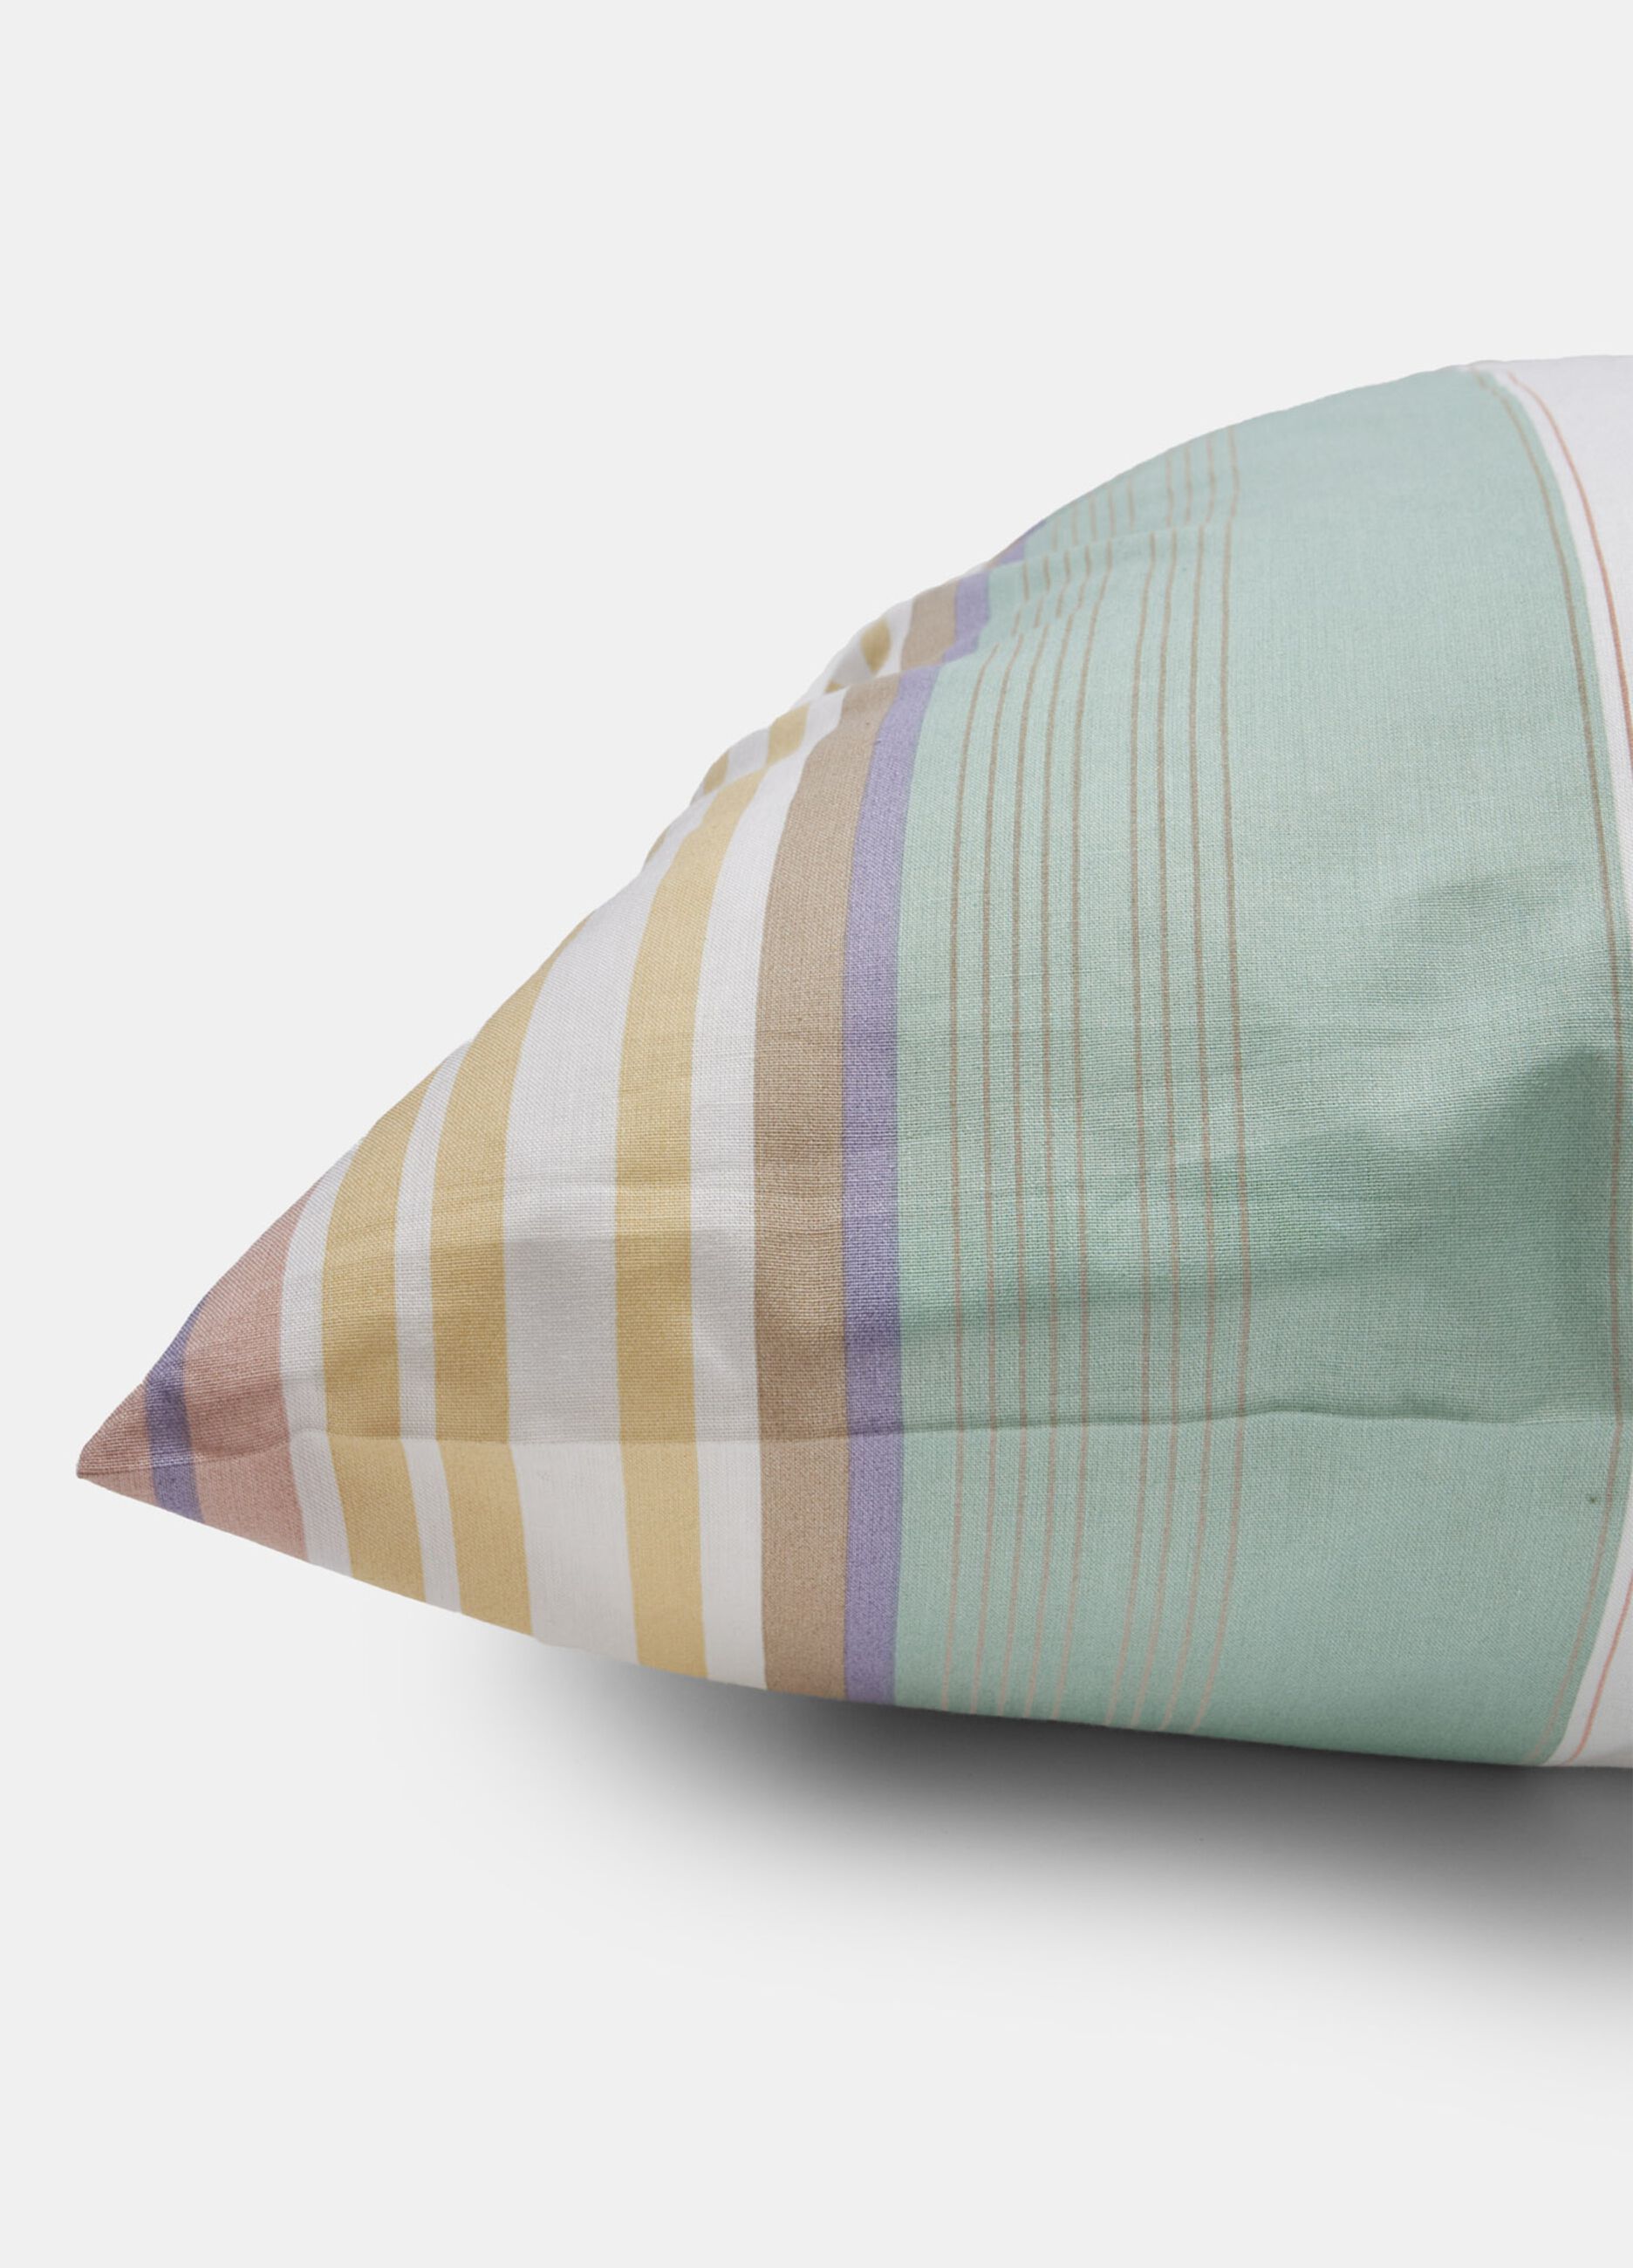 Striped pillowcase in cotton